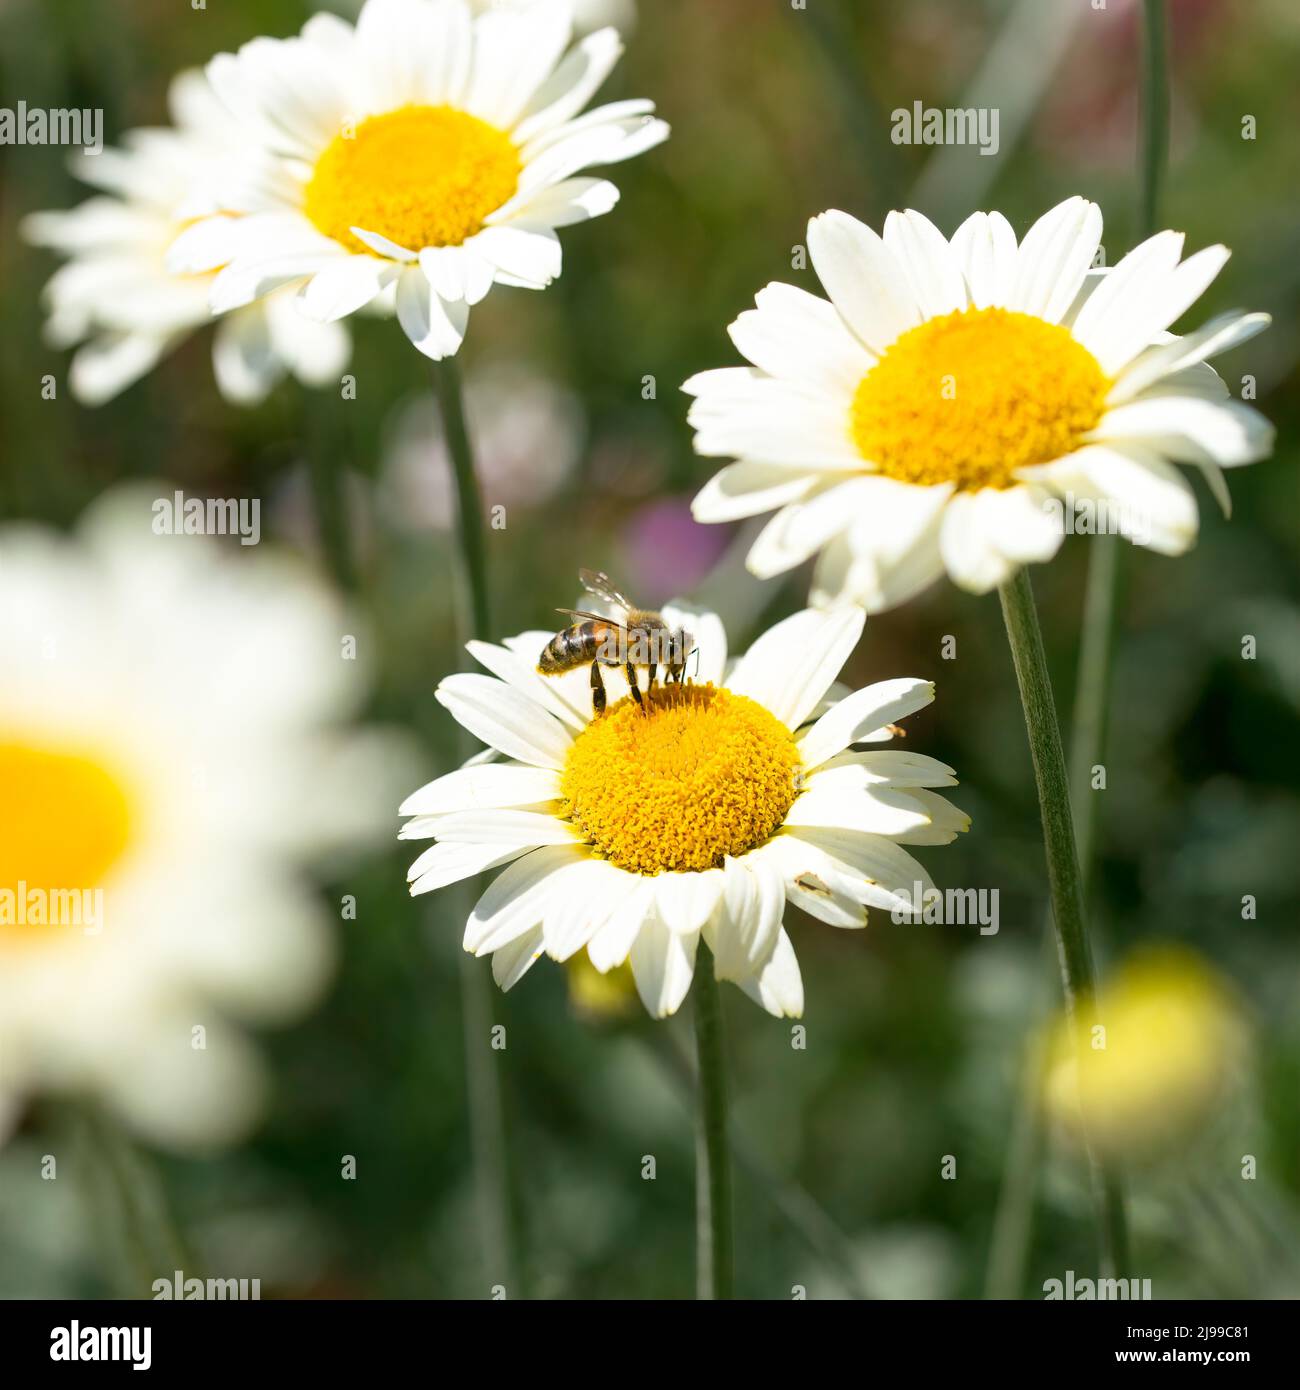 Bee on a Susanna Mitchell Marguerite Daisy (Anthemis) Stock Photo